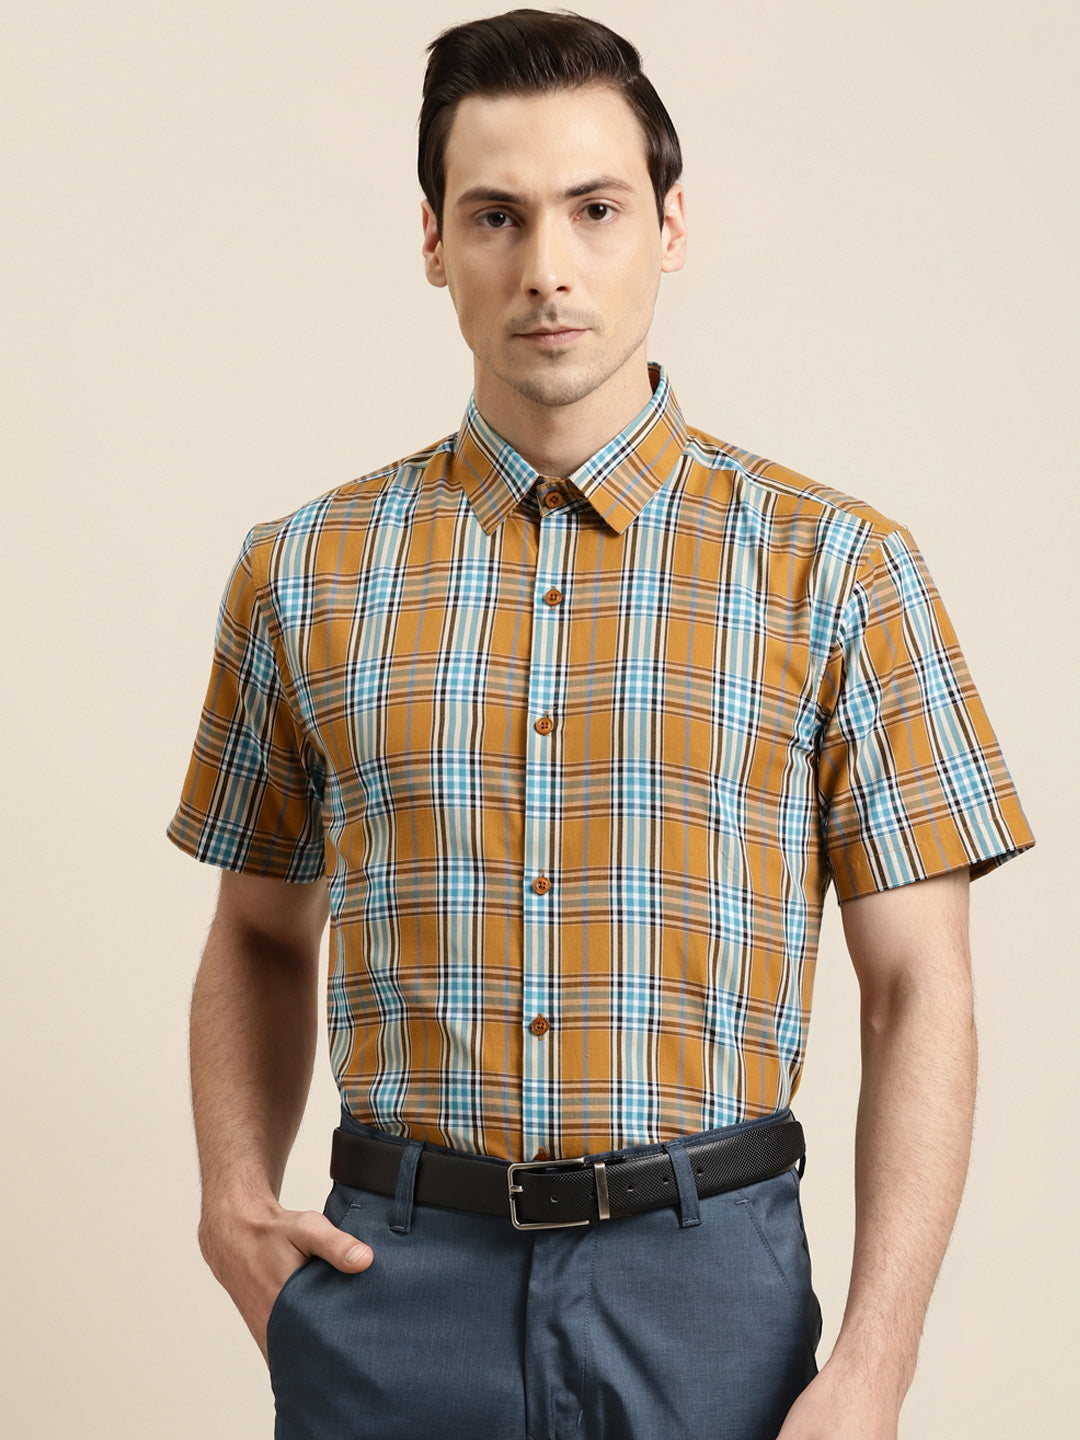 Men's Cotton Mustard & Light peacock Formal Shirt - Sojanya